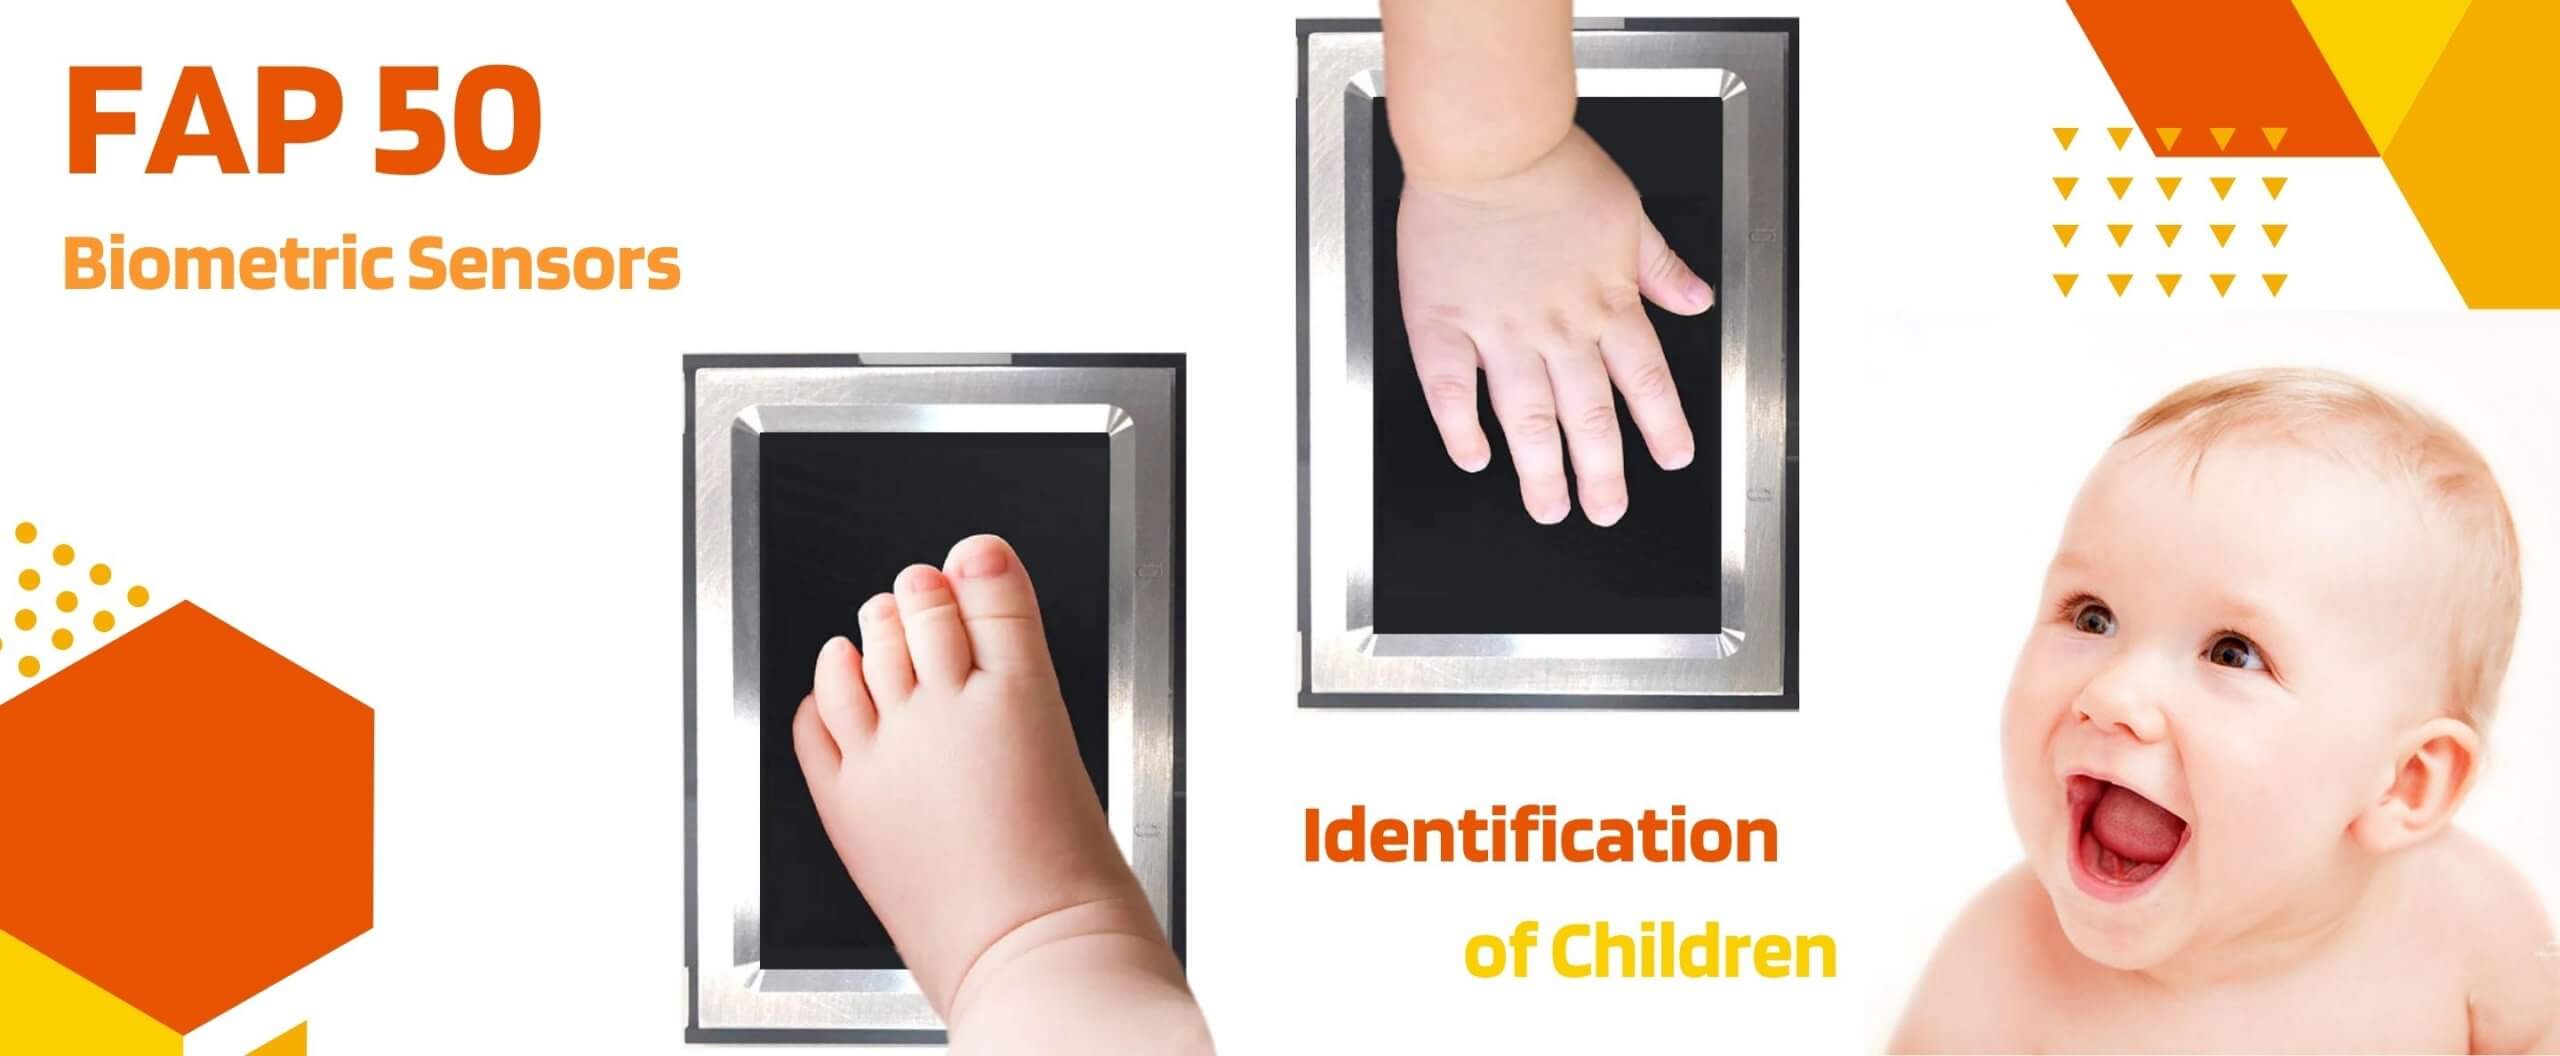 FAP 50 Fingerprint Sensors-Identification of Children